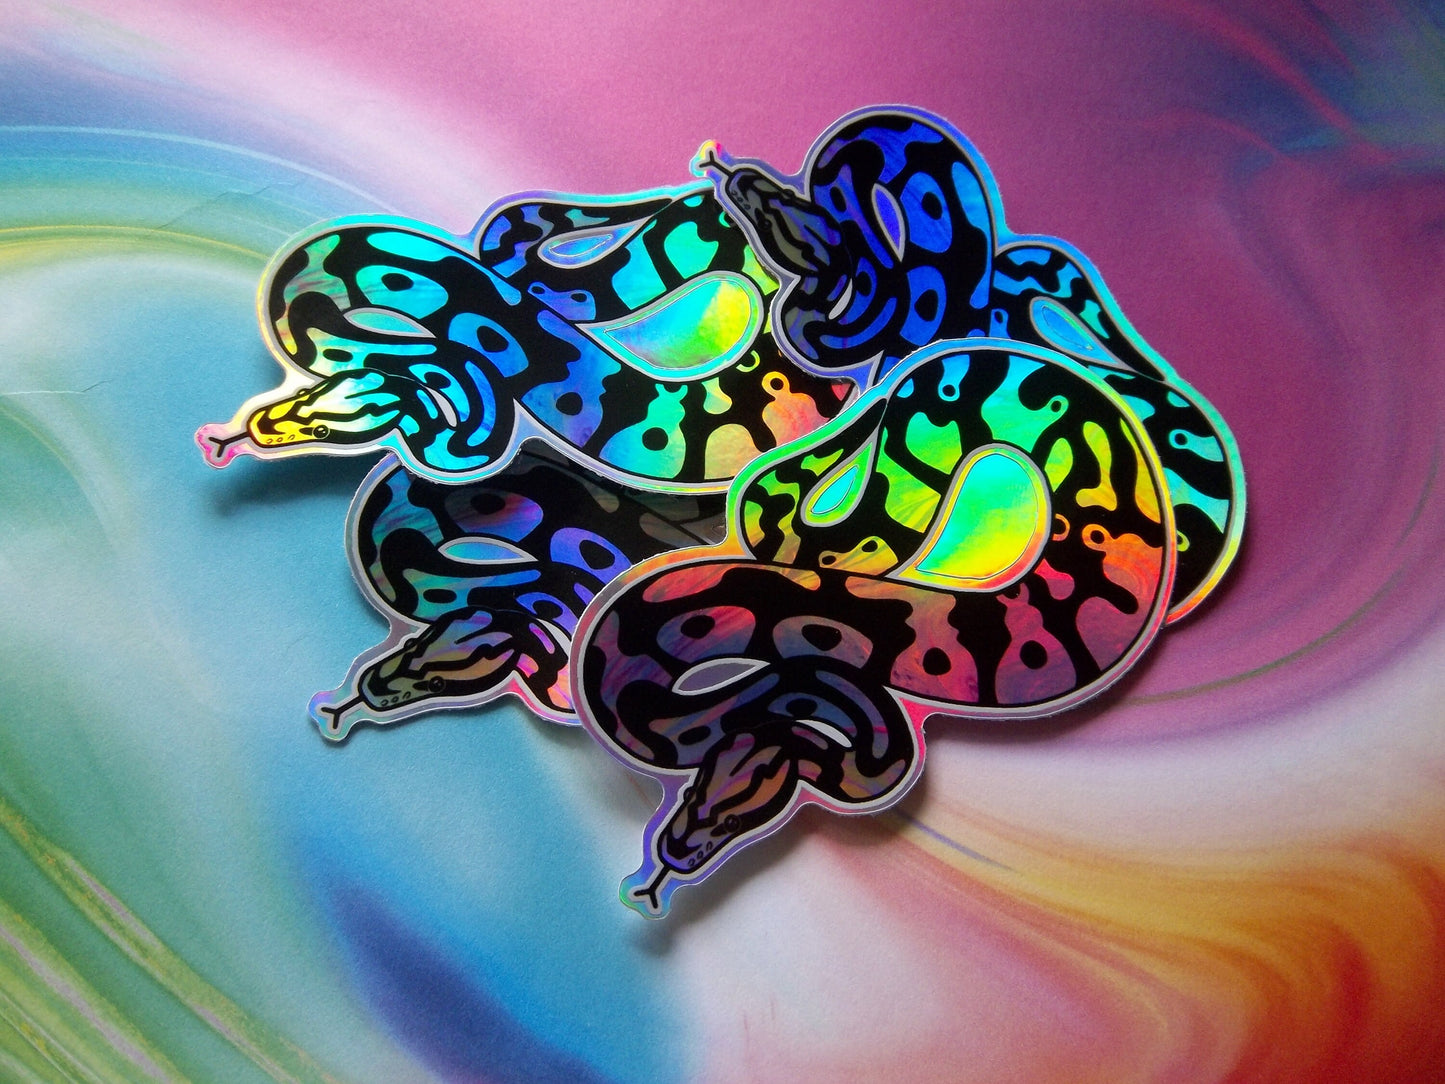 Ball Python Snake Sticker - 3" Holo Vinyl